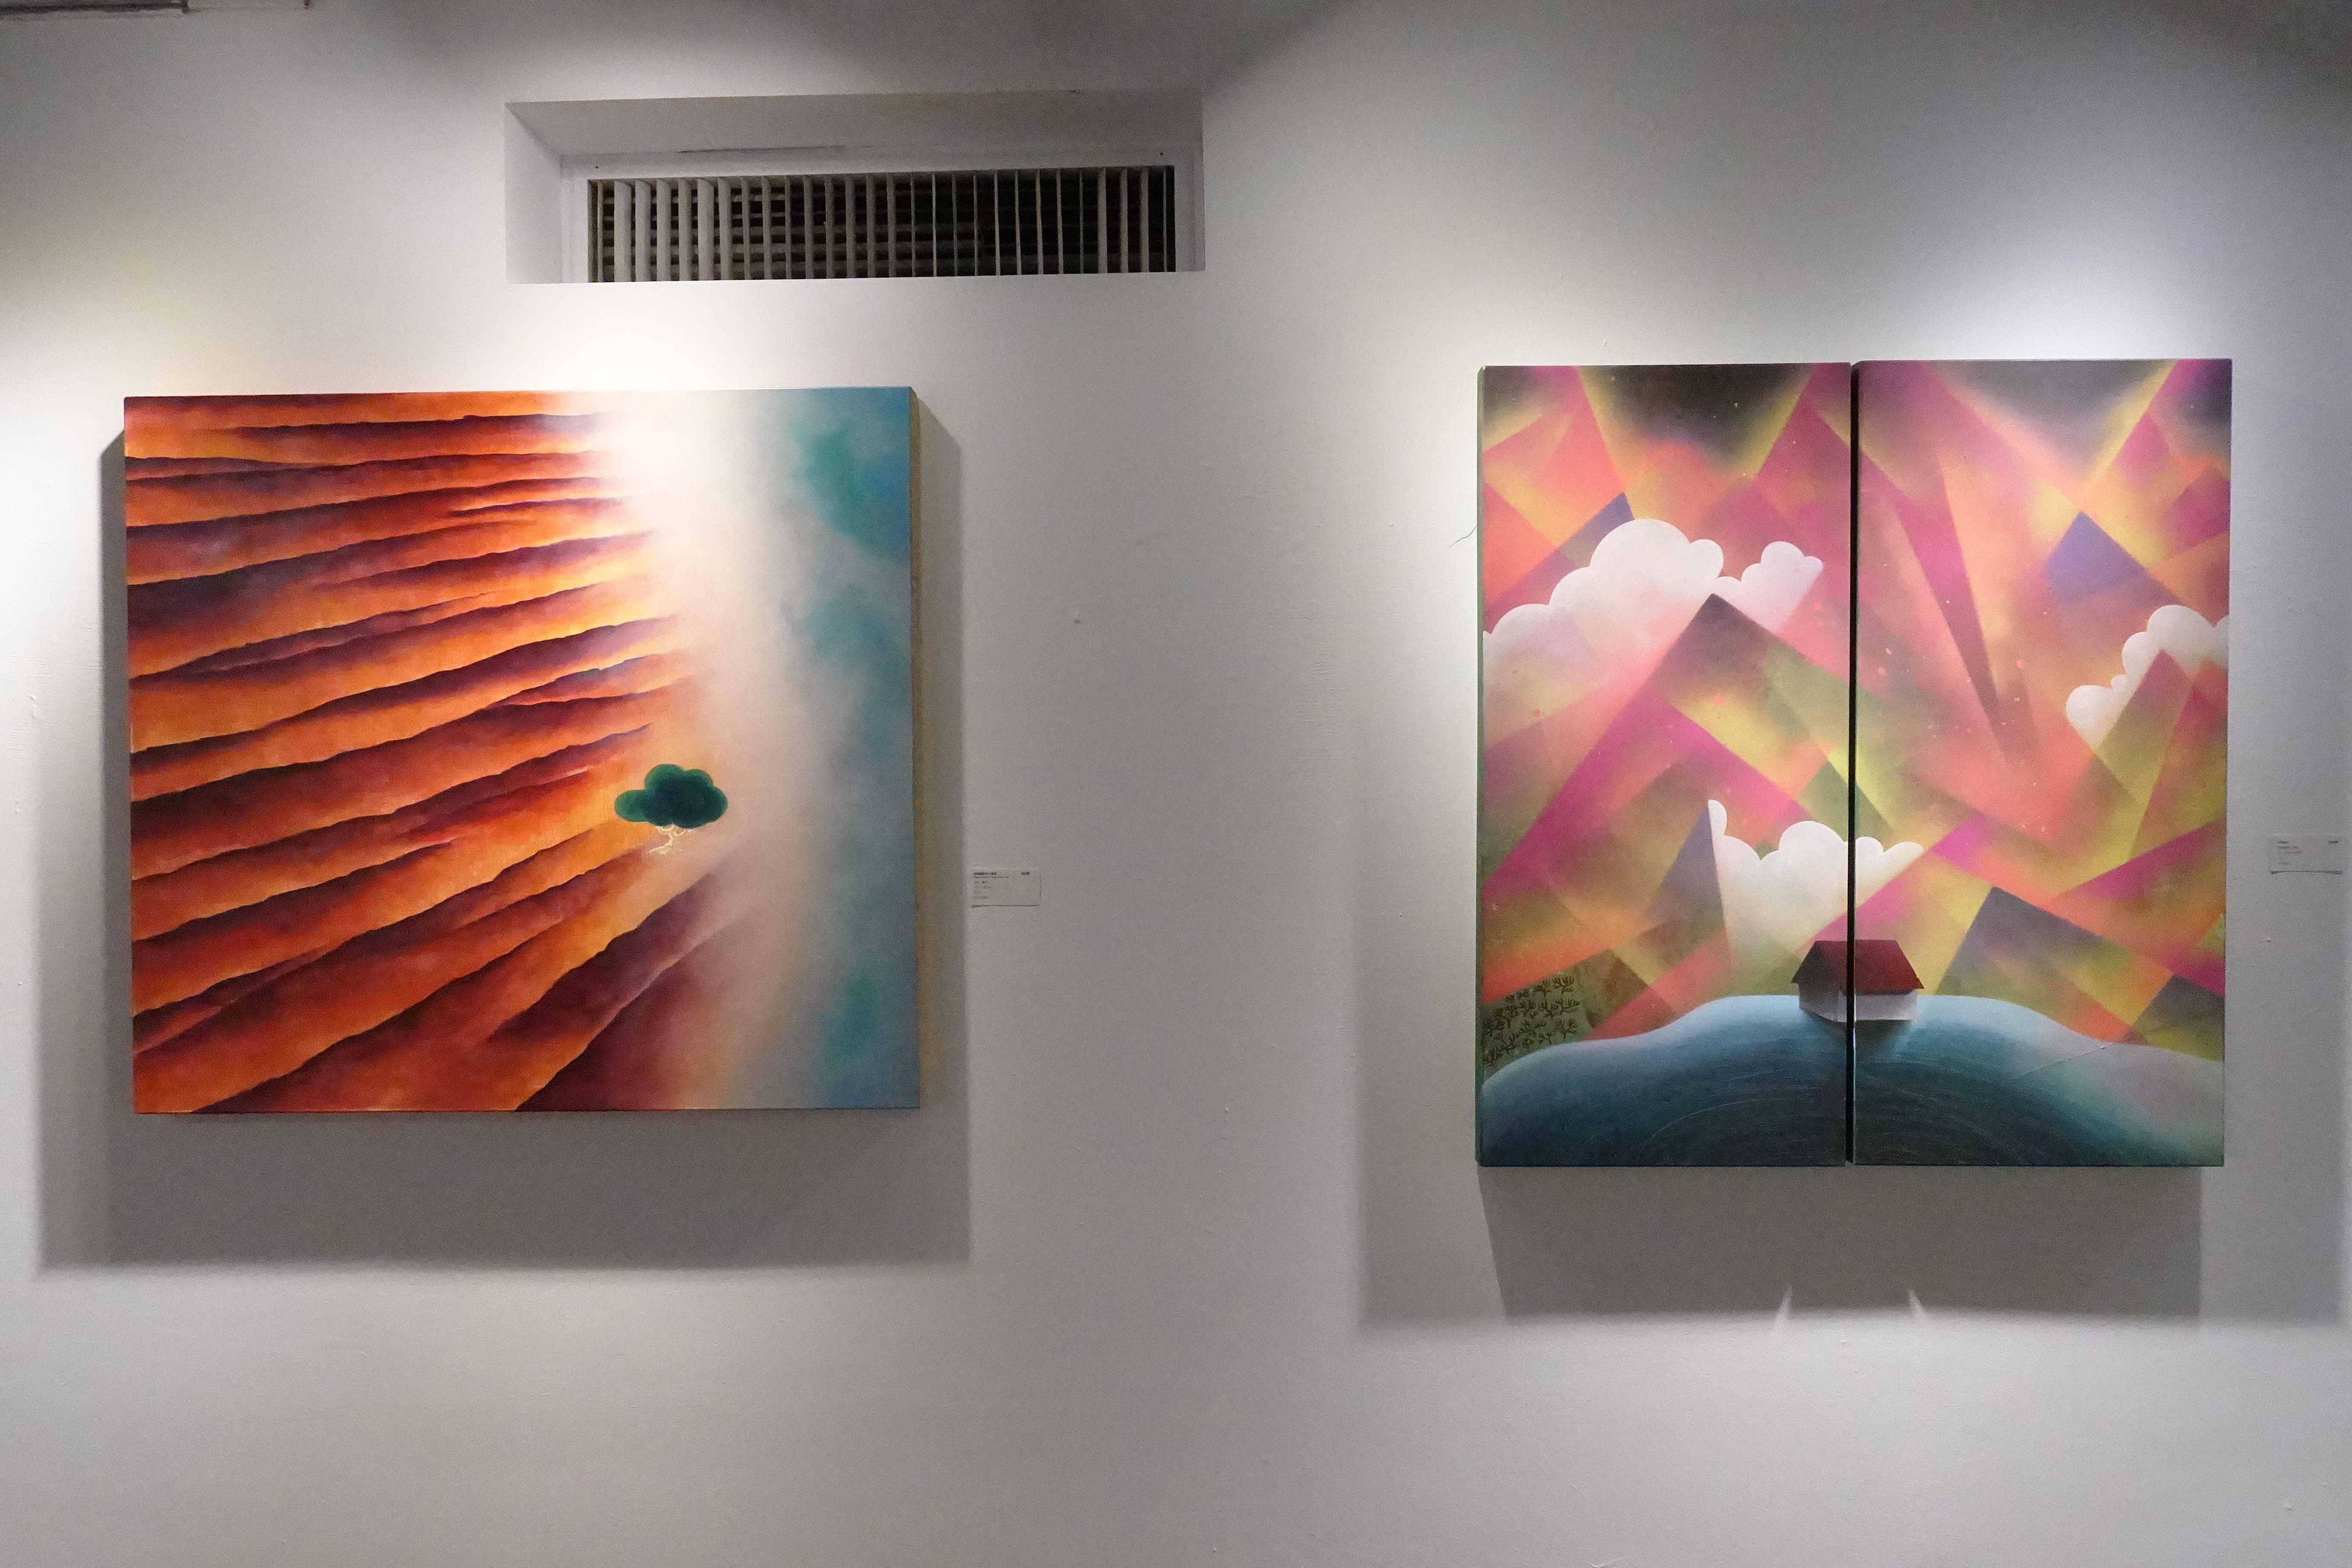 張友鷦，《海邊築夢的一棵樹》(左)《巢》(右)，油彩畫布，2018，2014。